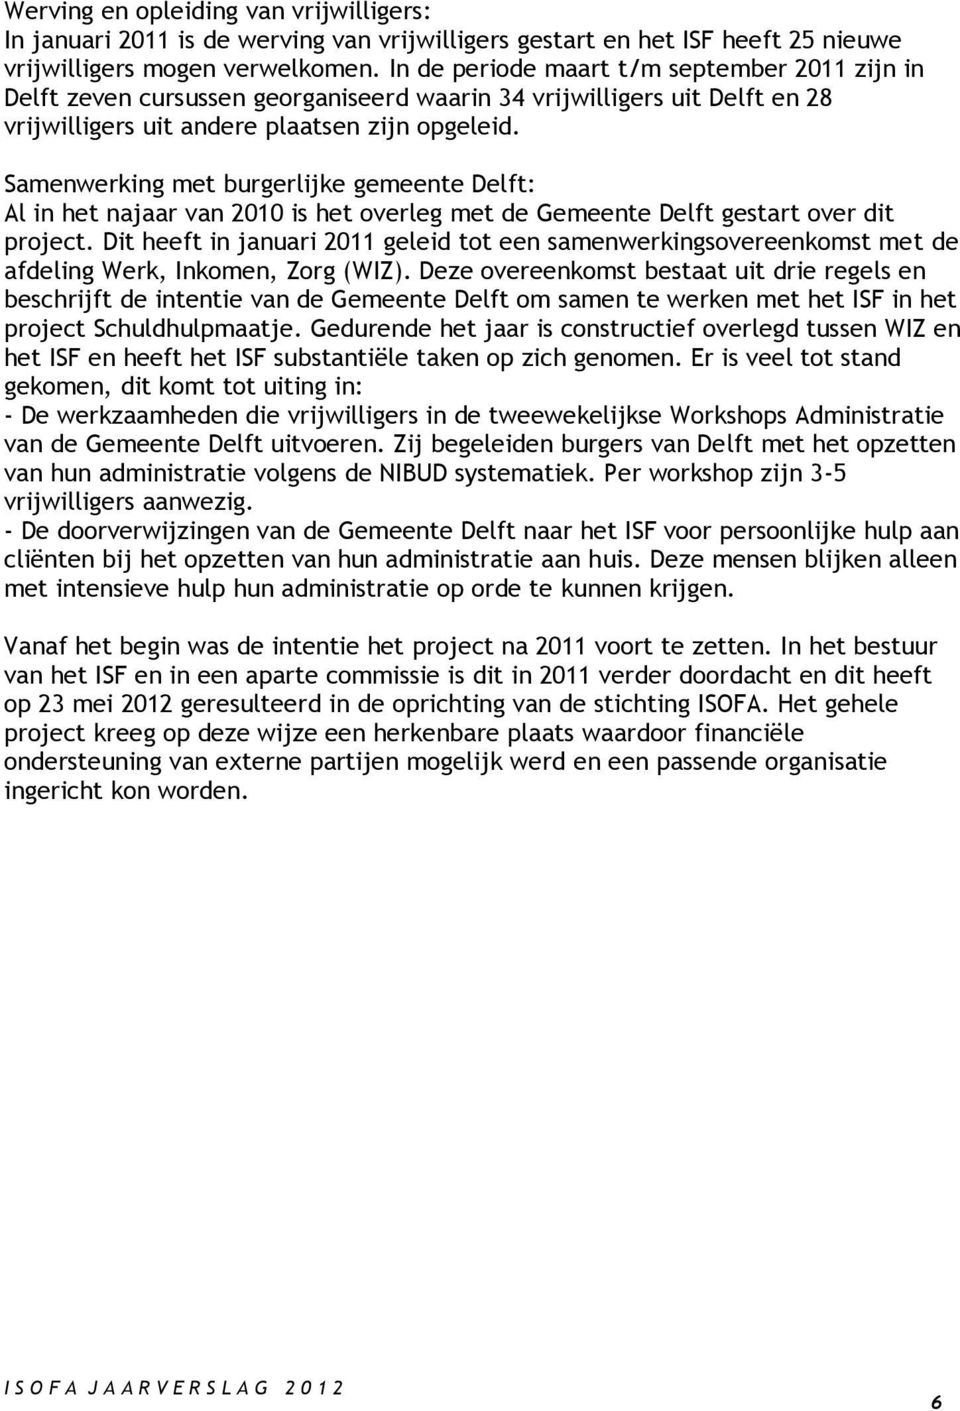 Samenwerking met burgerlijke gemeente Delft: Al in het najaar van 2010 is het overleg met de Gemeente Delft gestart over dit project.